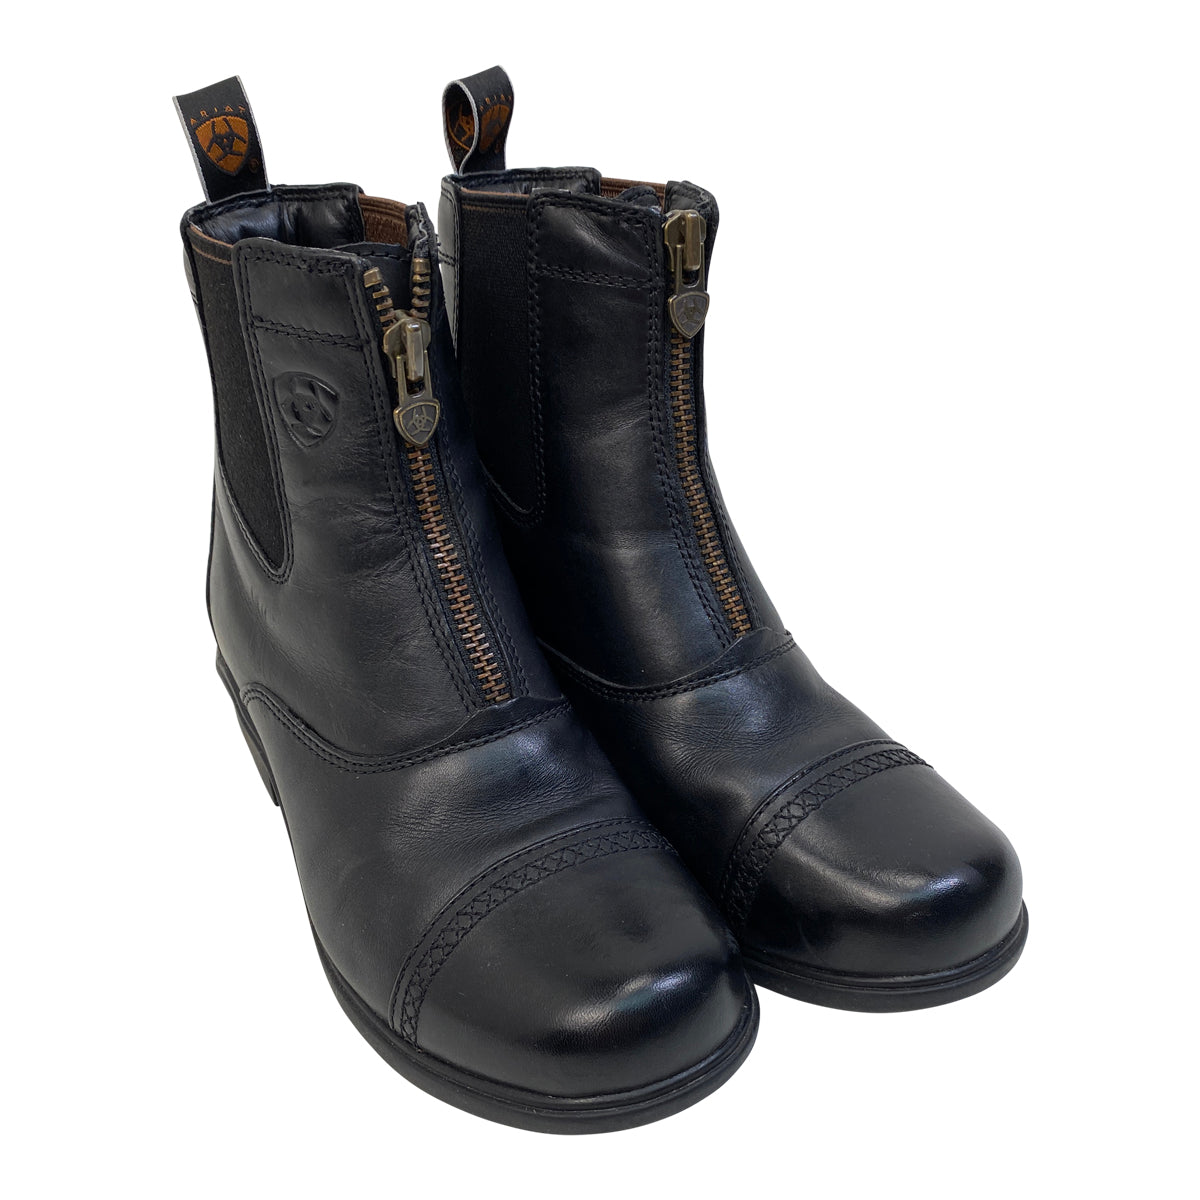 Ariat Heritage RT Zip Paddock Boots in Black